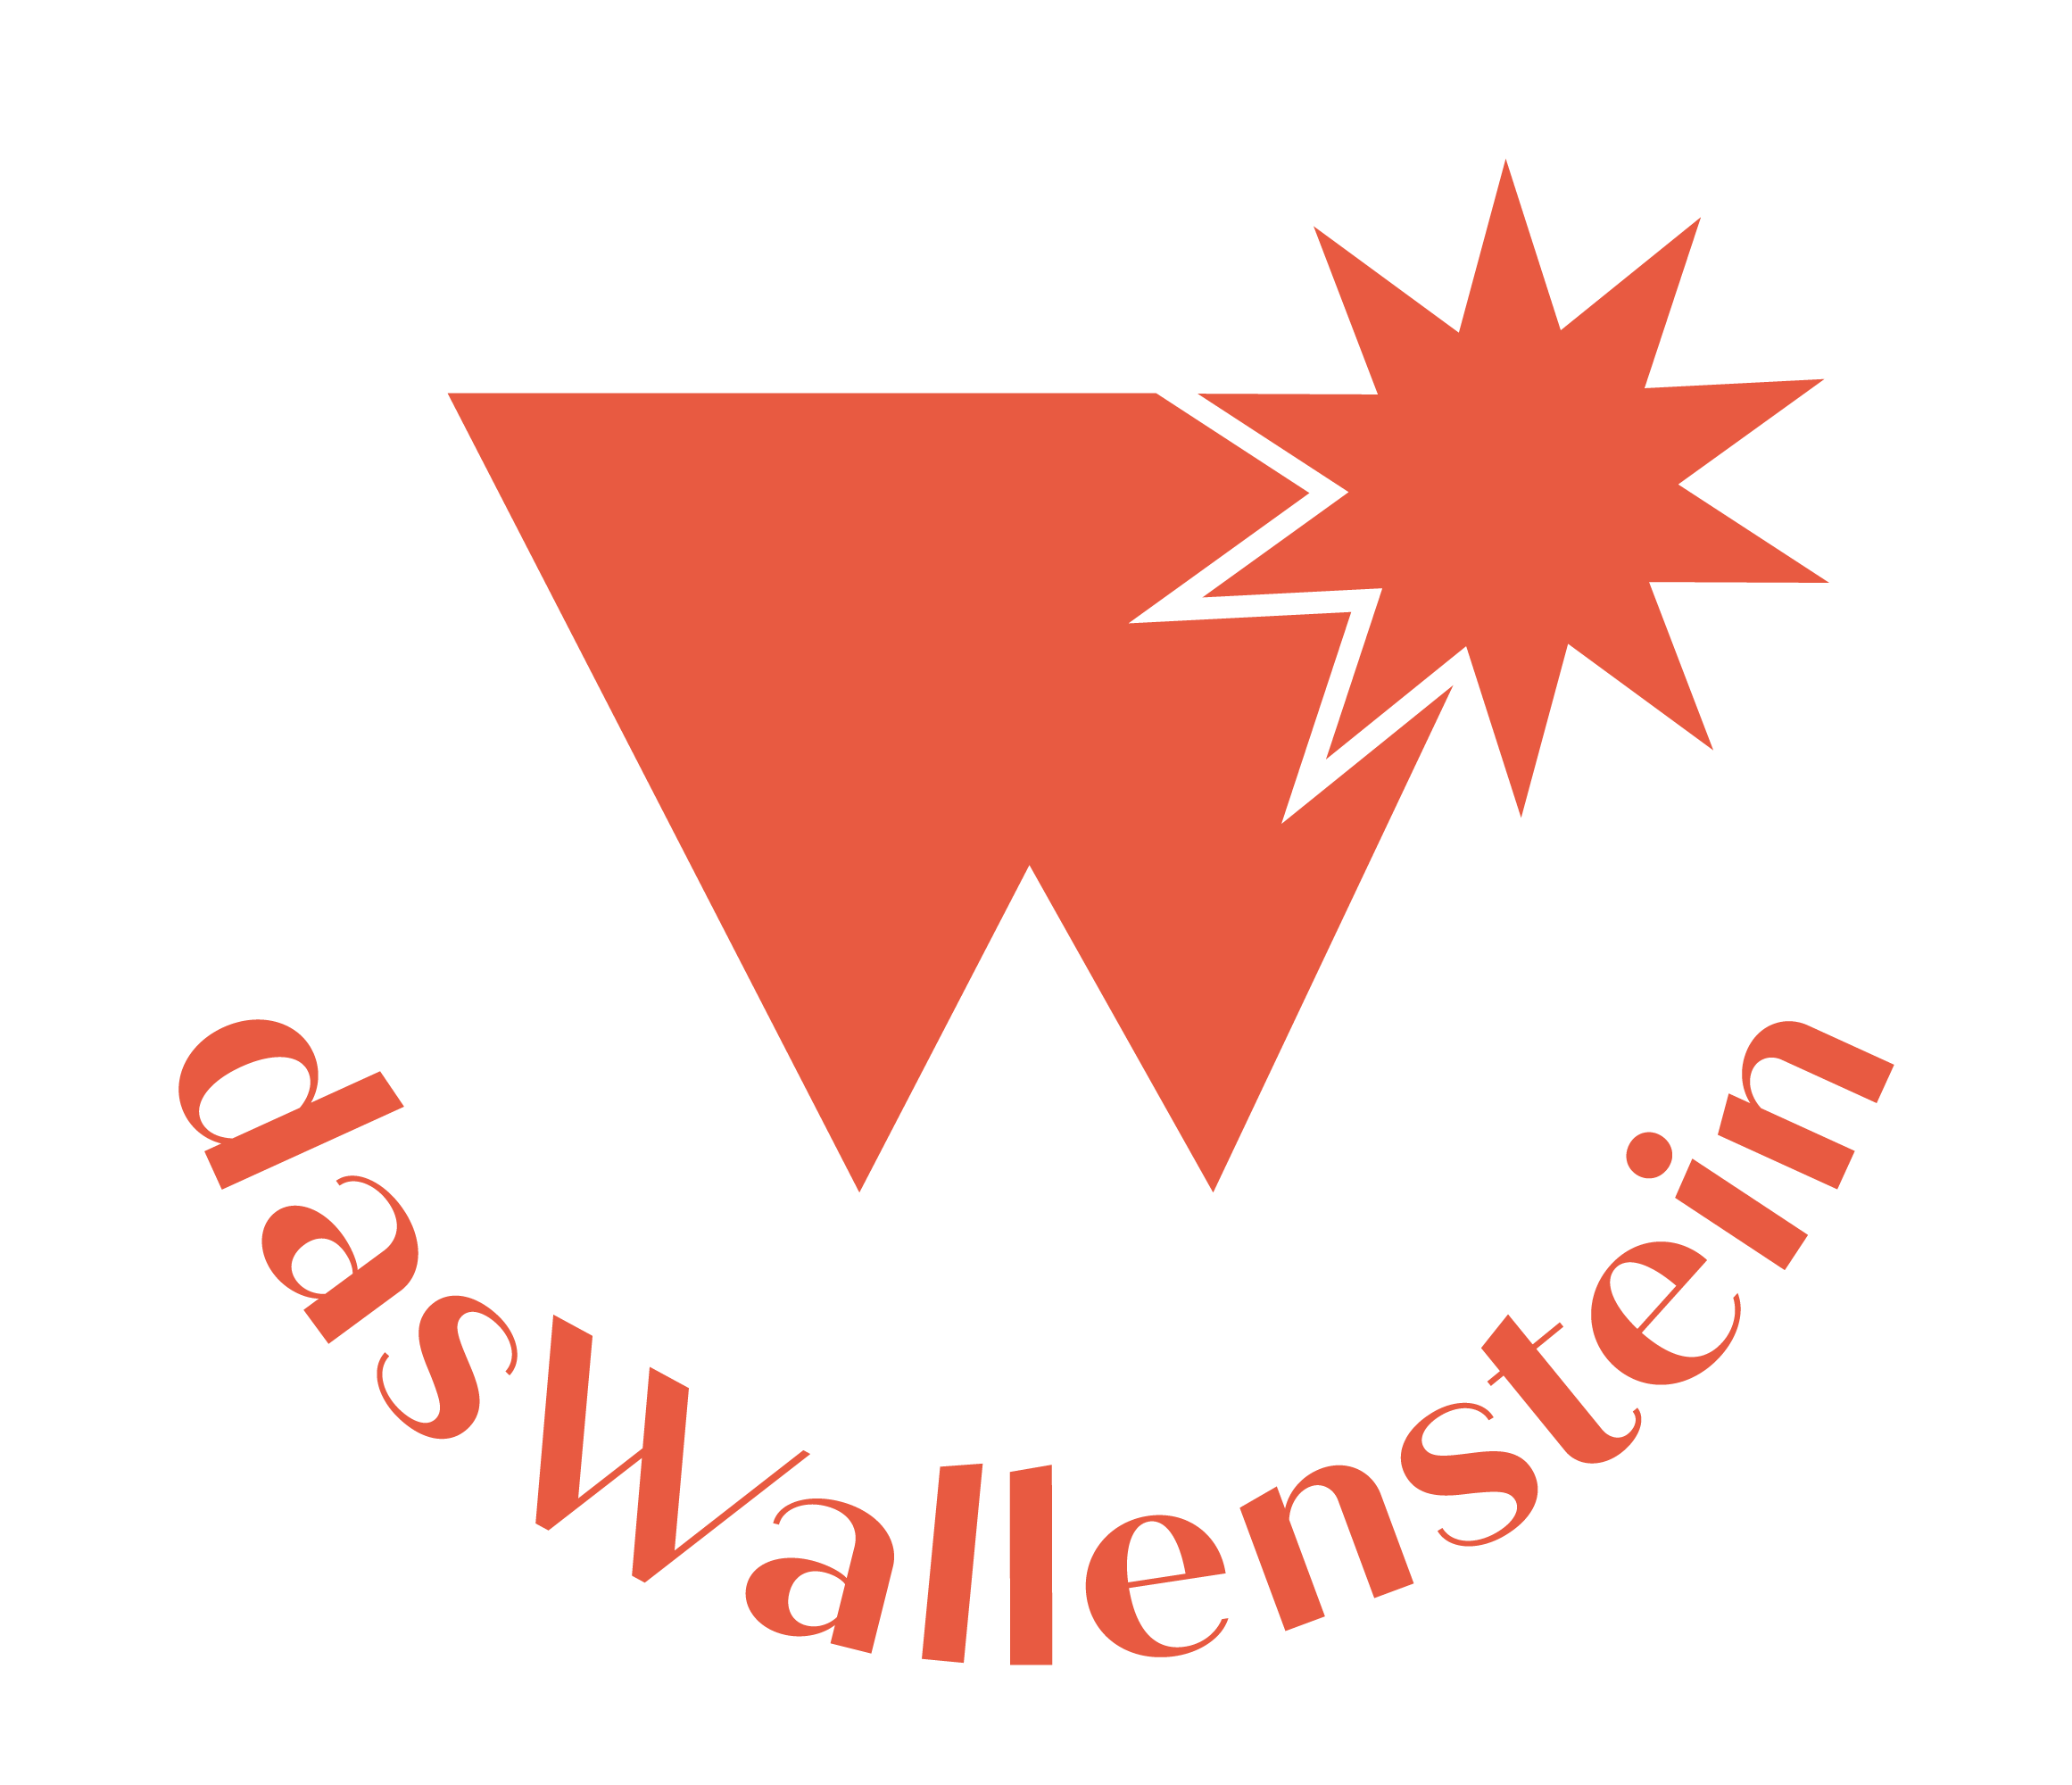 dasWallenstein Logo